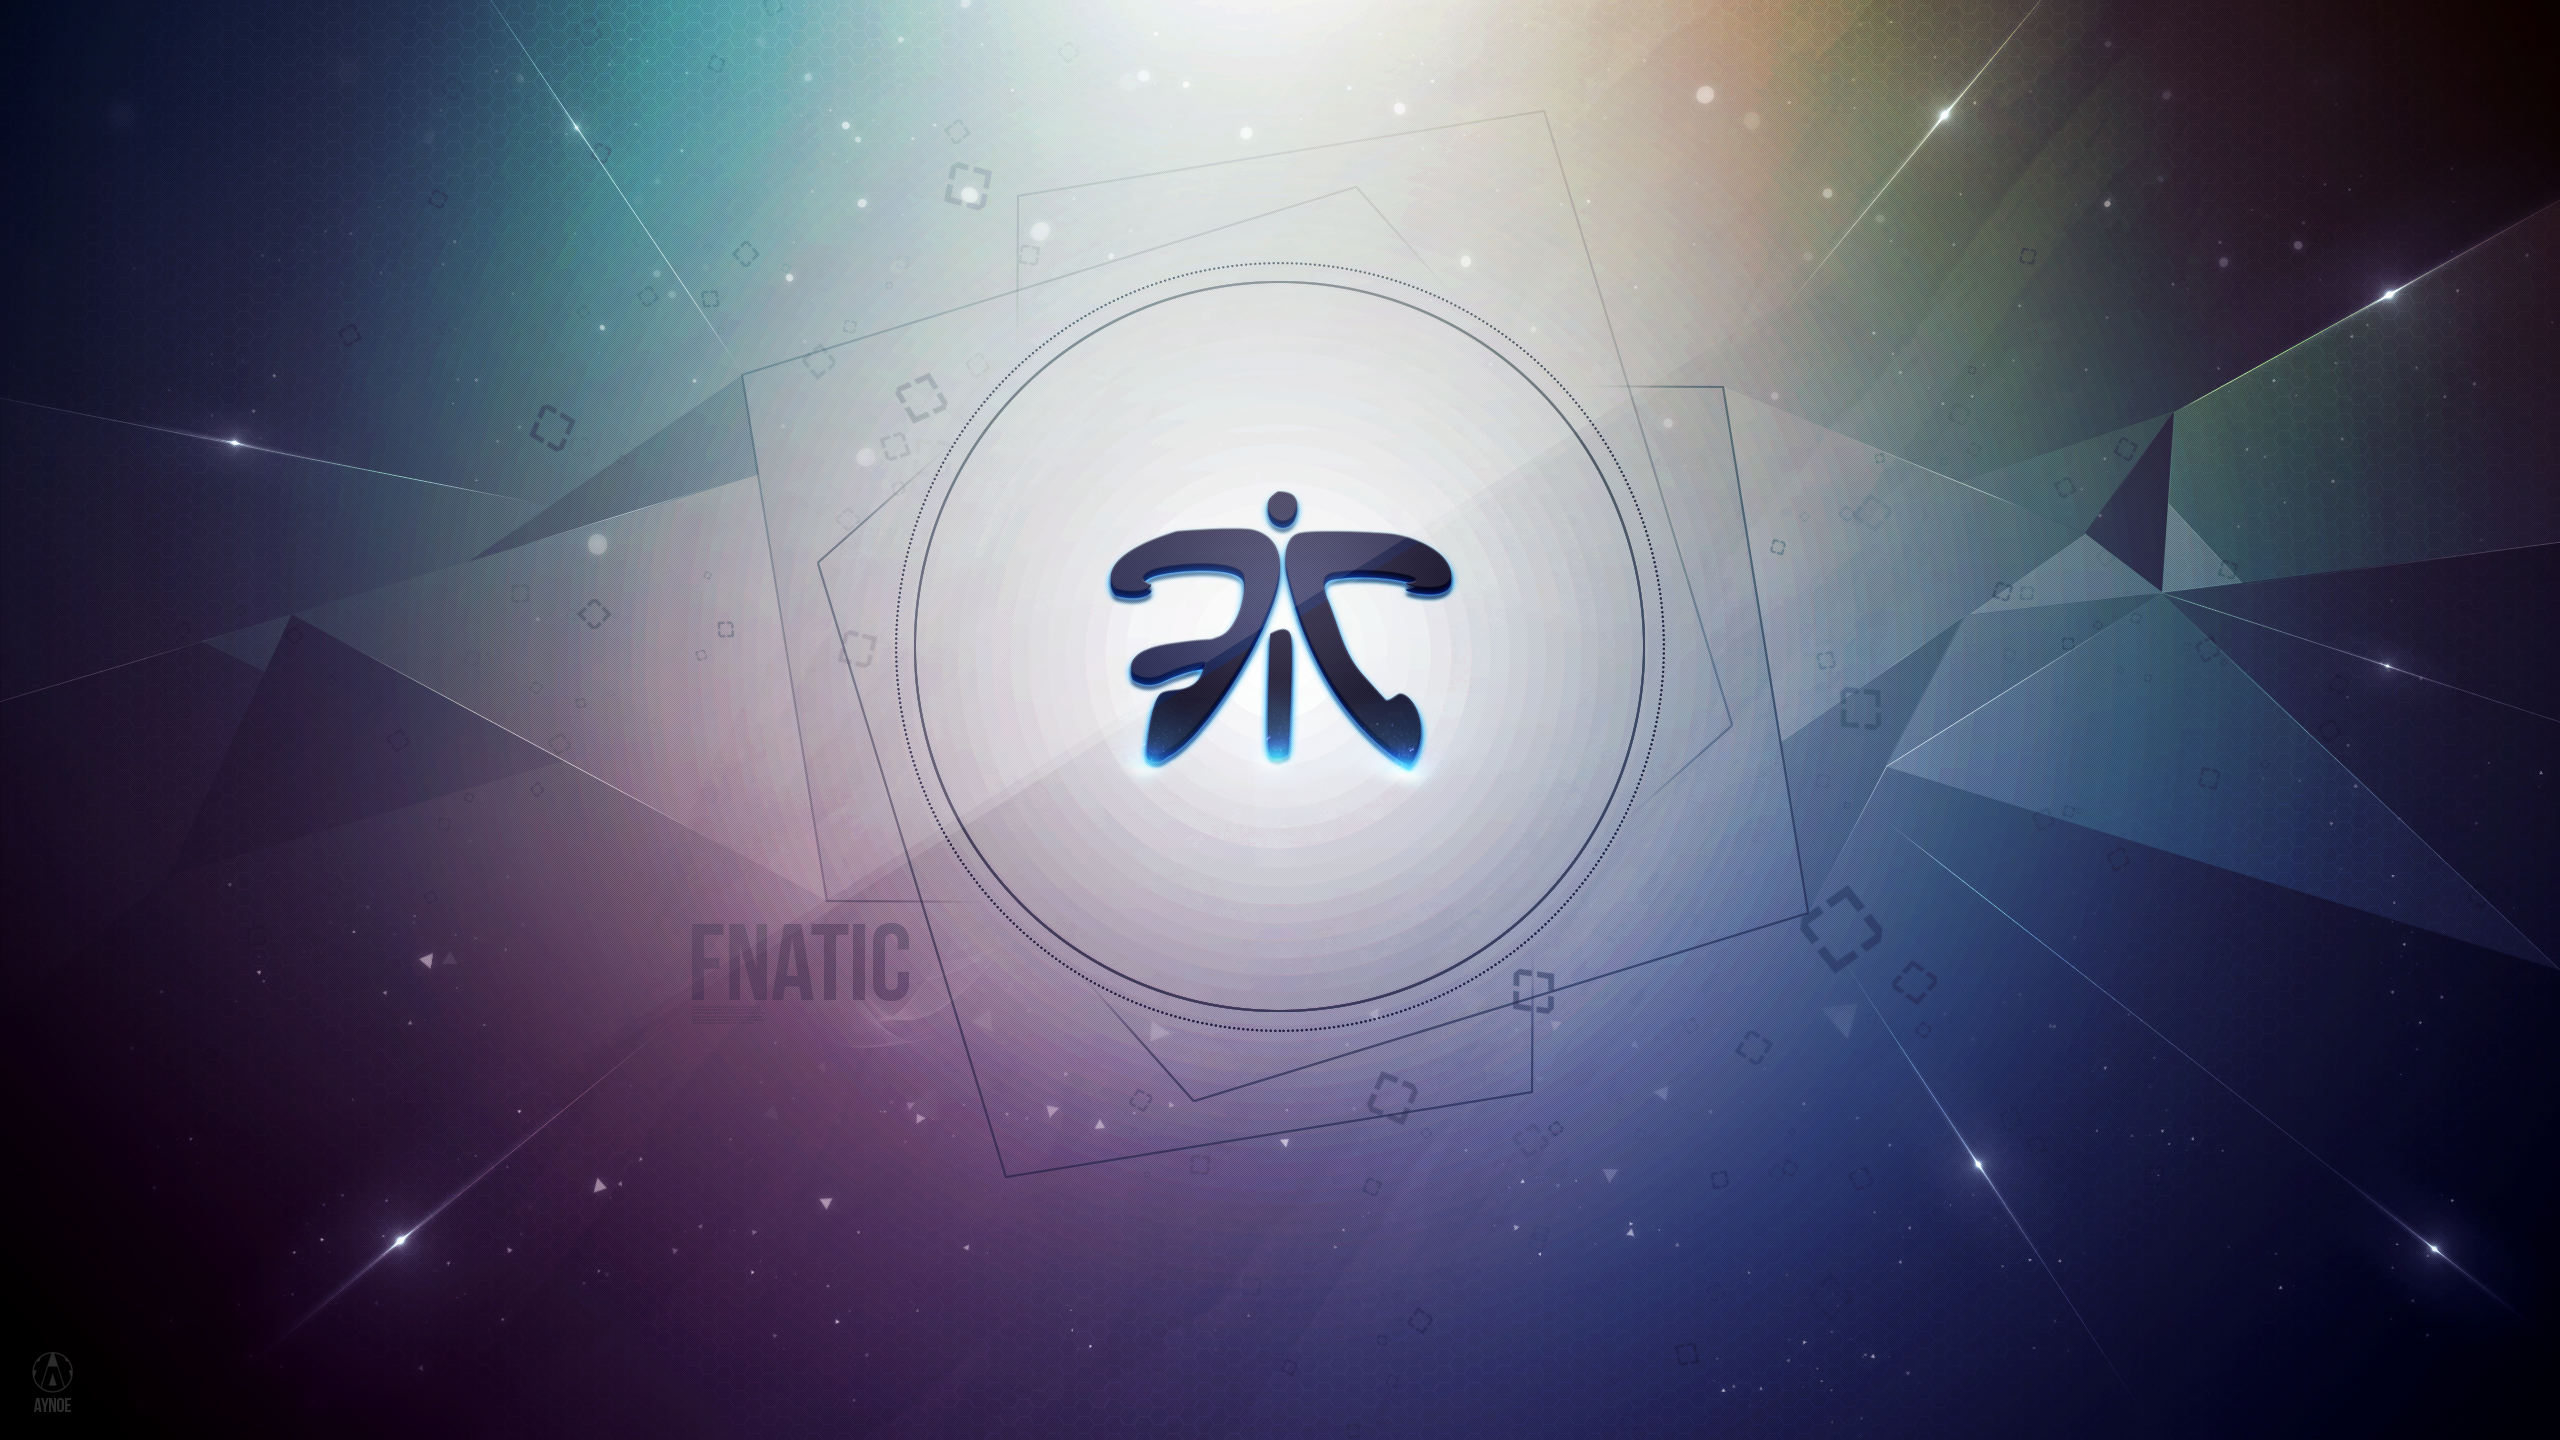 Fnatic 3.0 Wallpaper Logo - League of Legends by Aynoe on ...